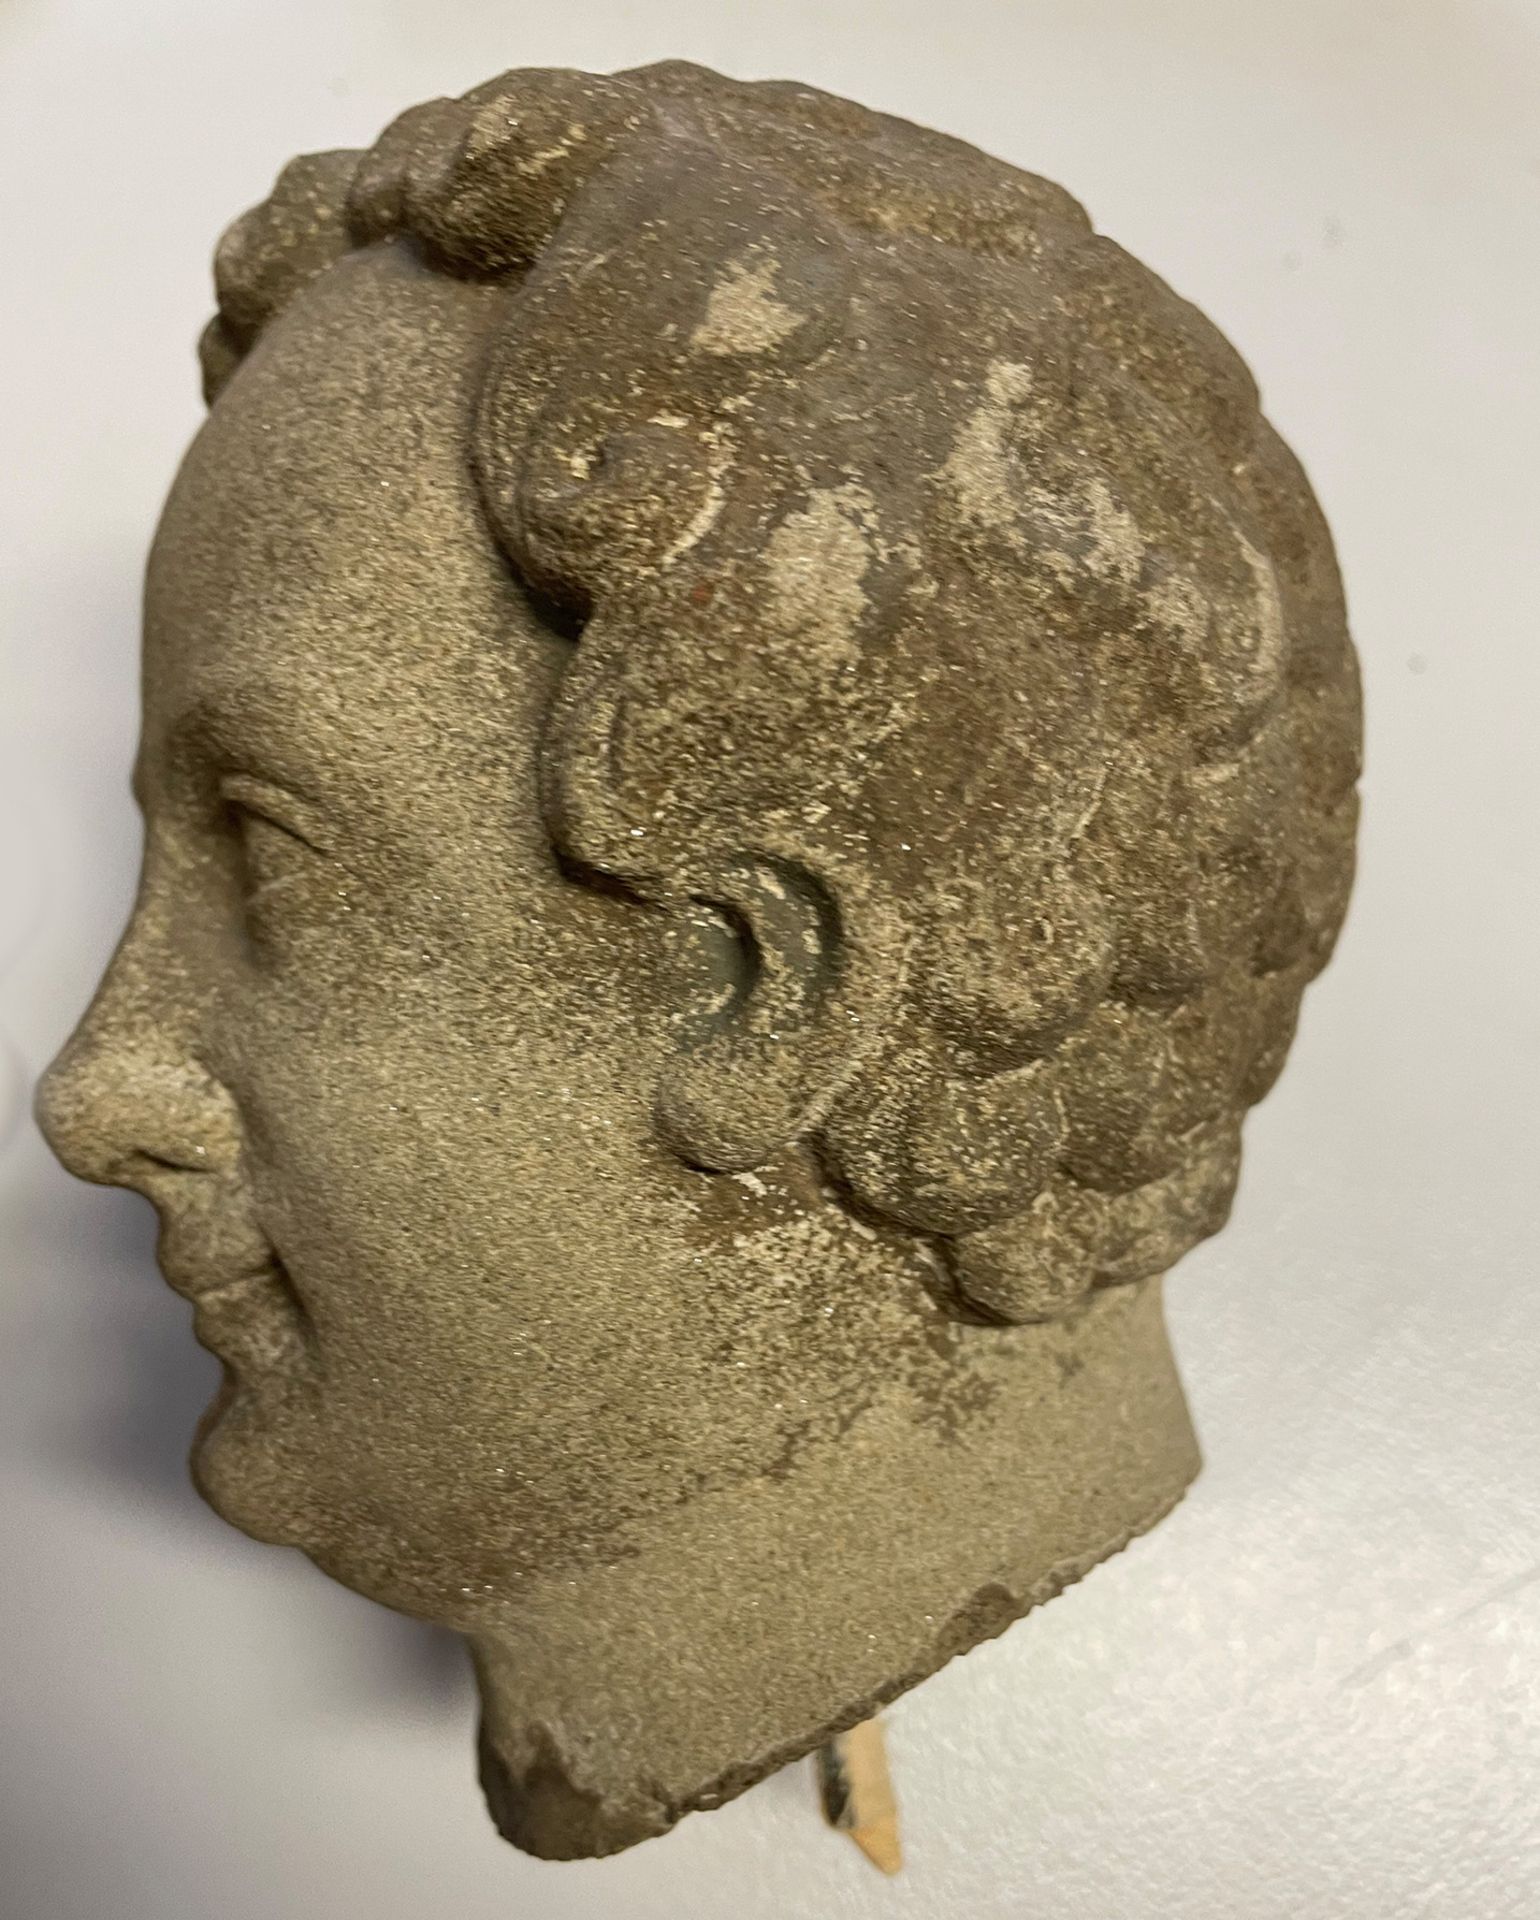 Wohl Frankreich 15./16. Jh., Kopf eines jungen Mannes mit lockigem Haar, Sandstein, Altersspuren, - Image 4 of 5